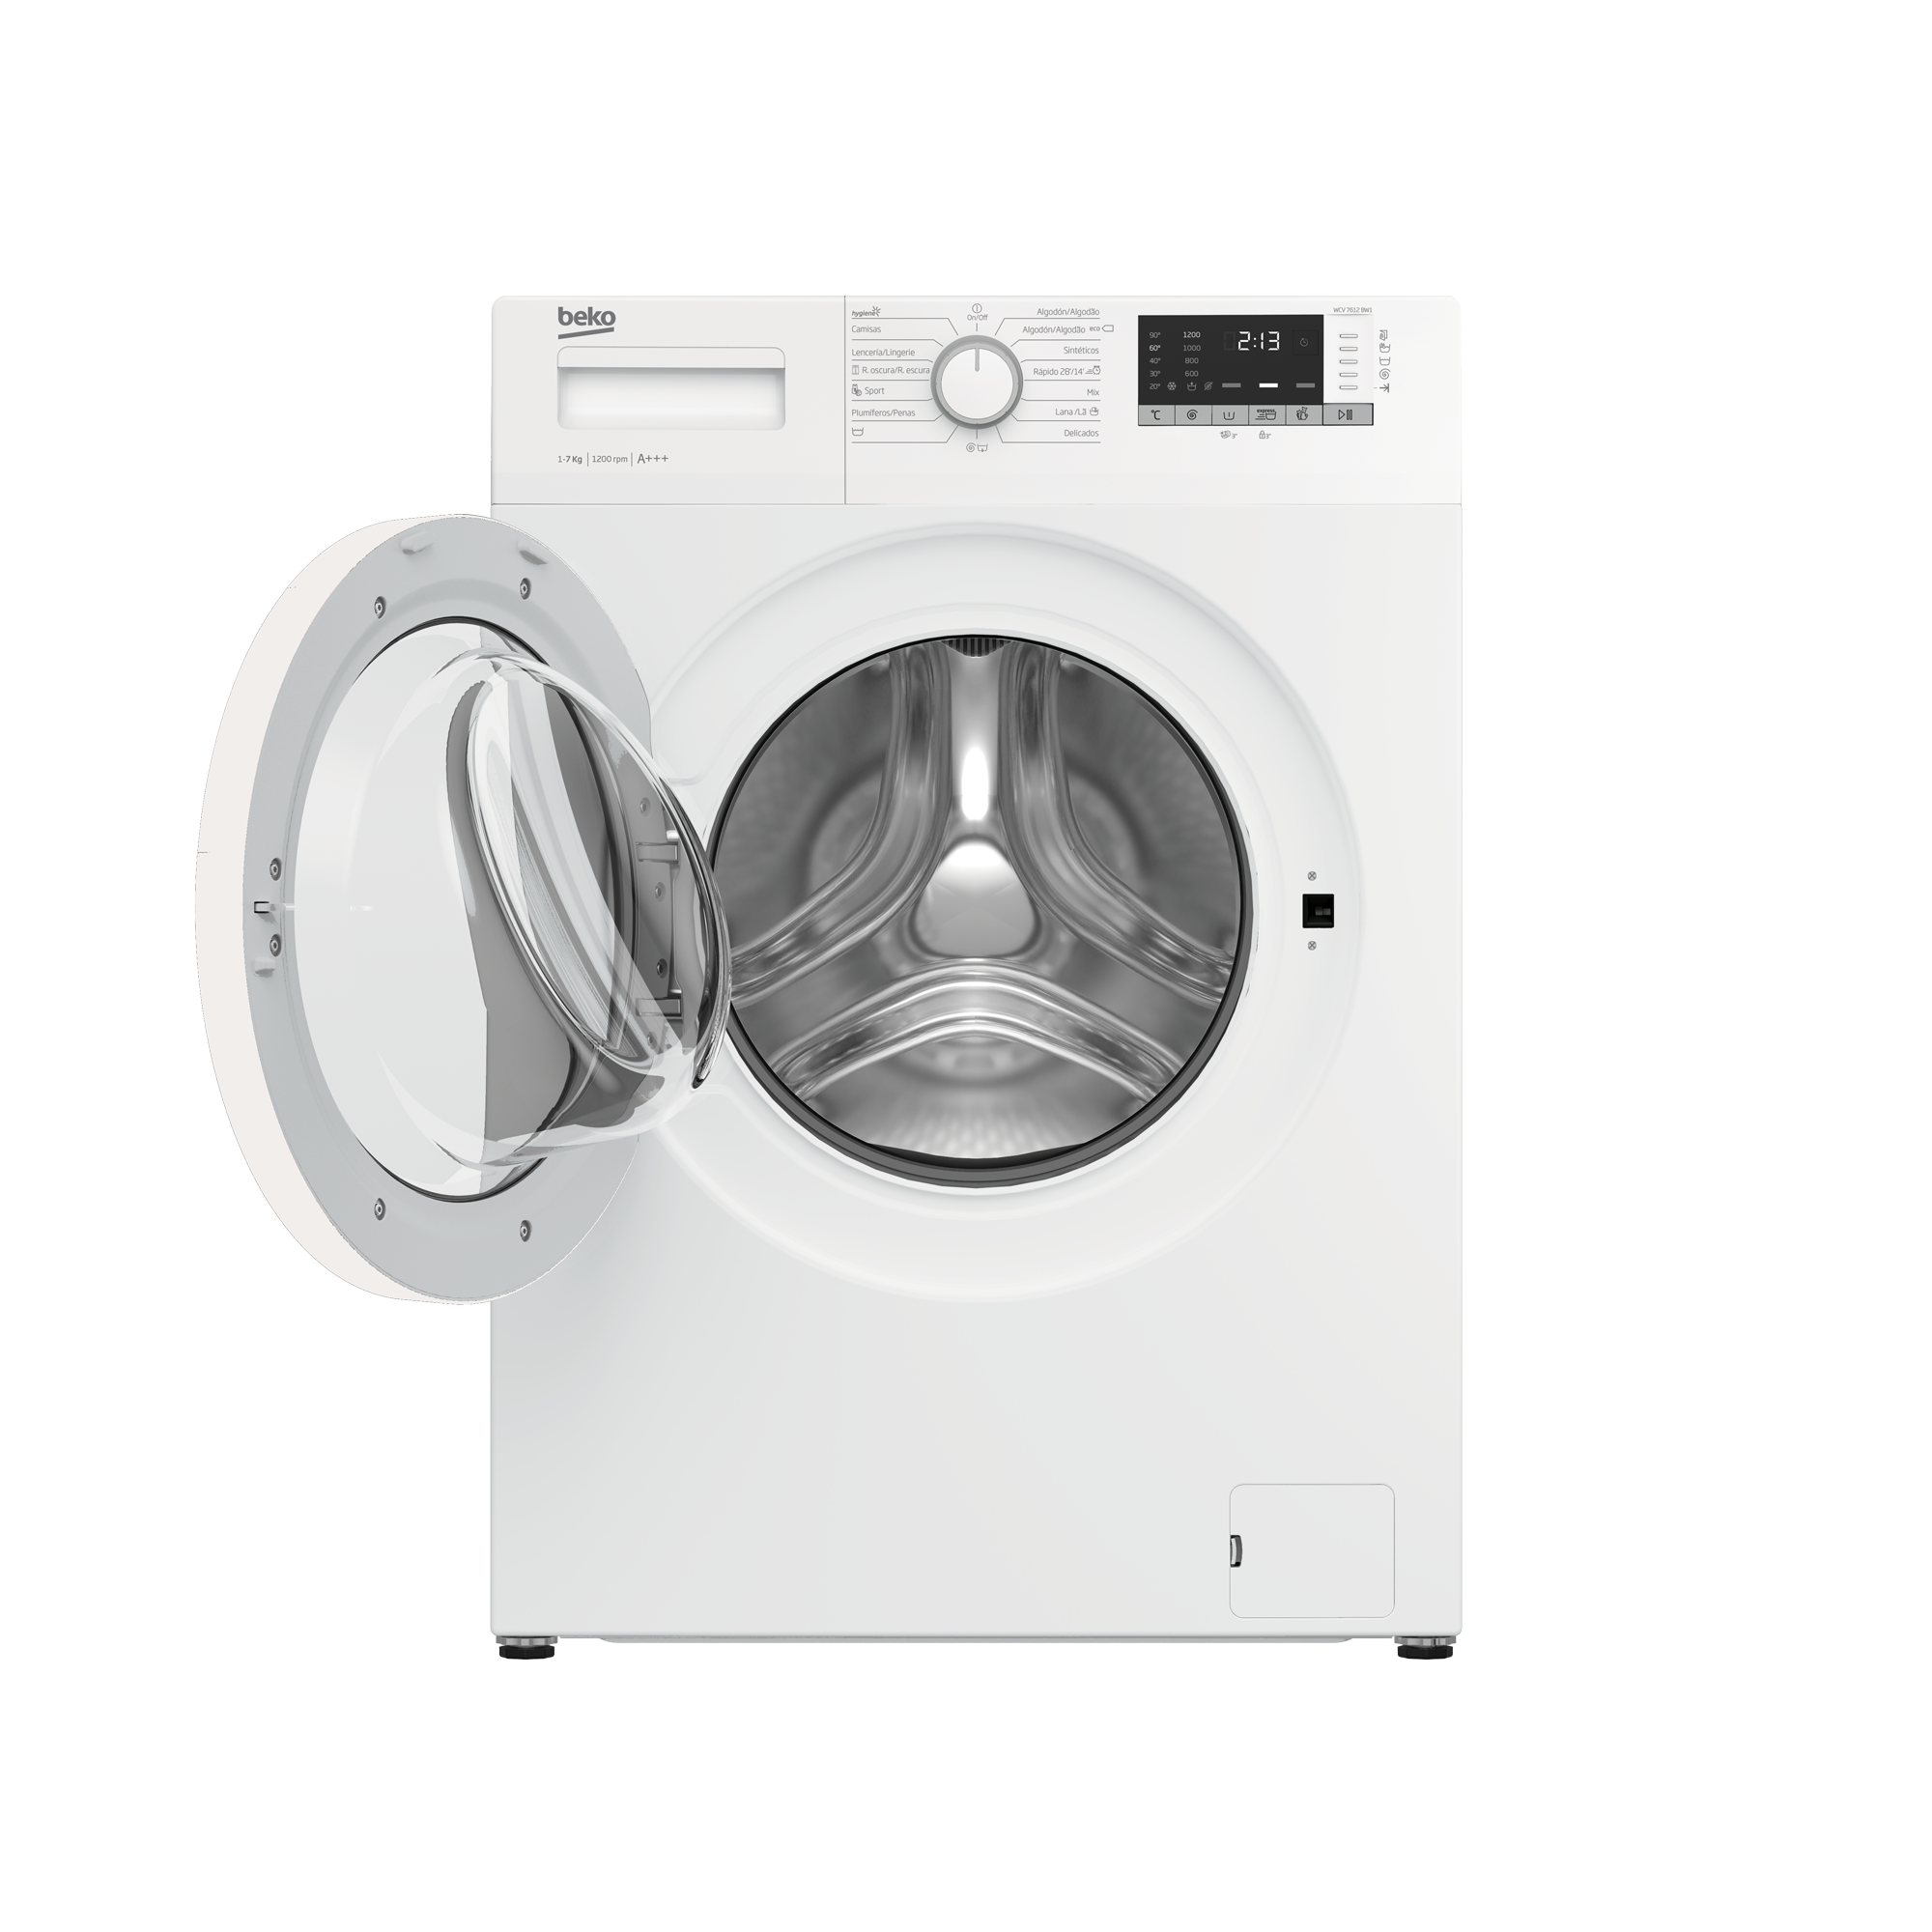 Beko wux71031wit lavadora 7kg 1000 rpm clase e color blanco barato de outlet